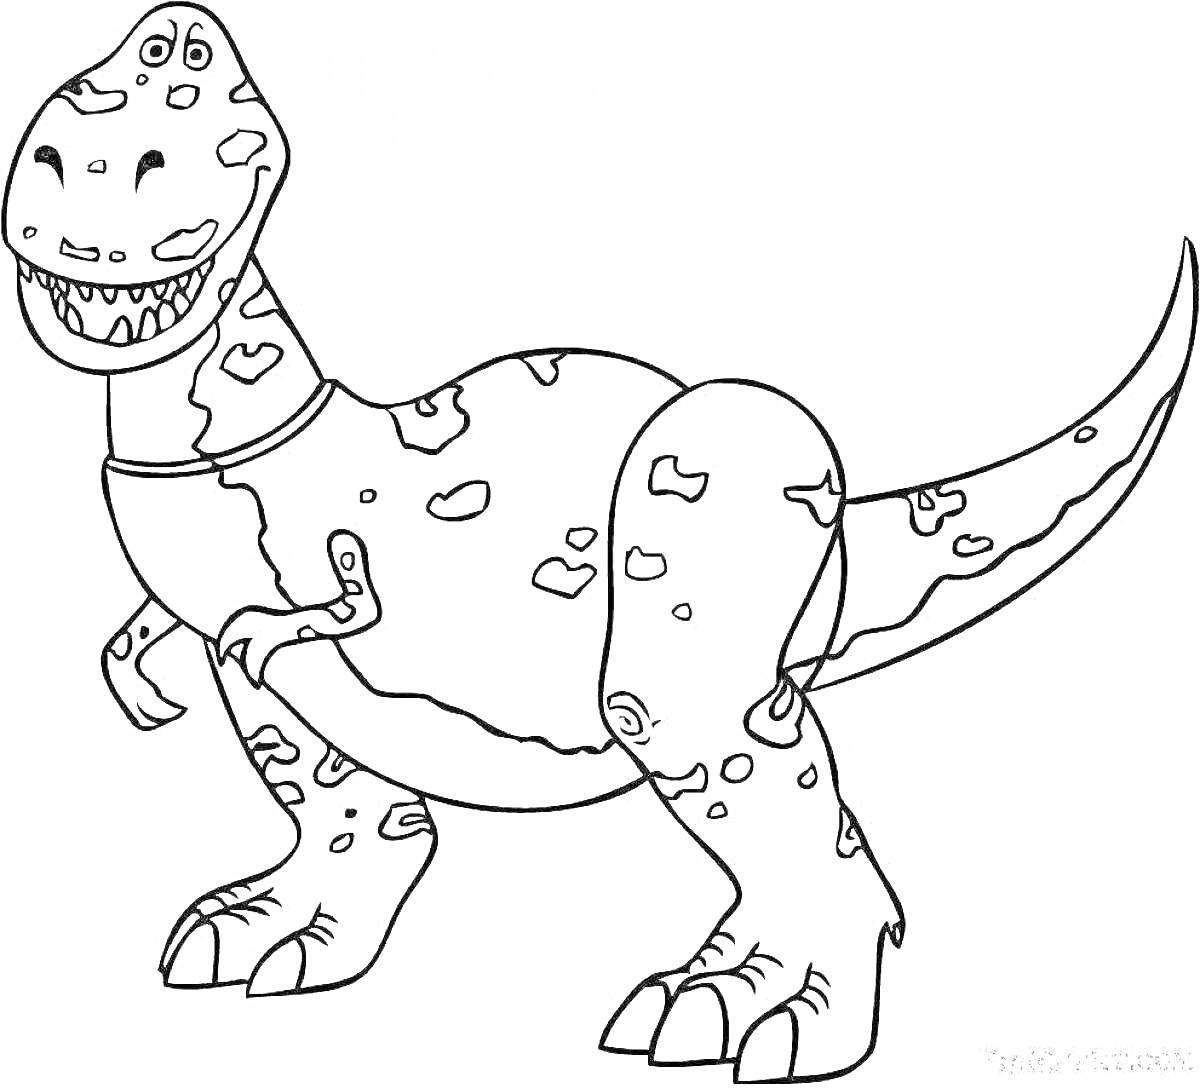 Раскраска Раскраска с тарбозавром из мультика